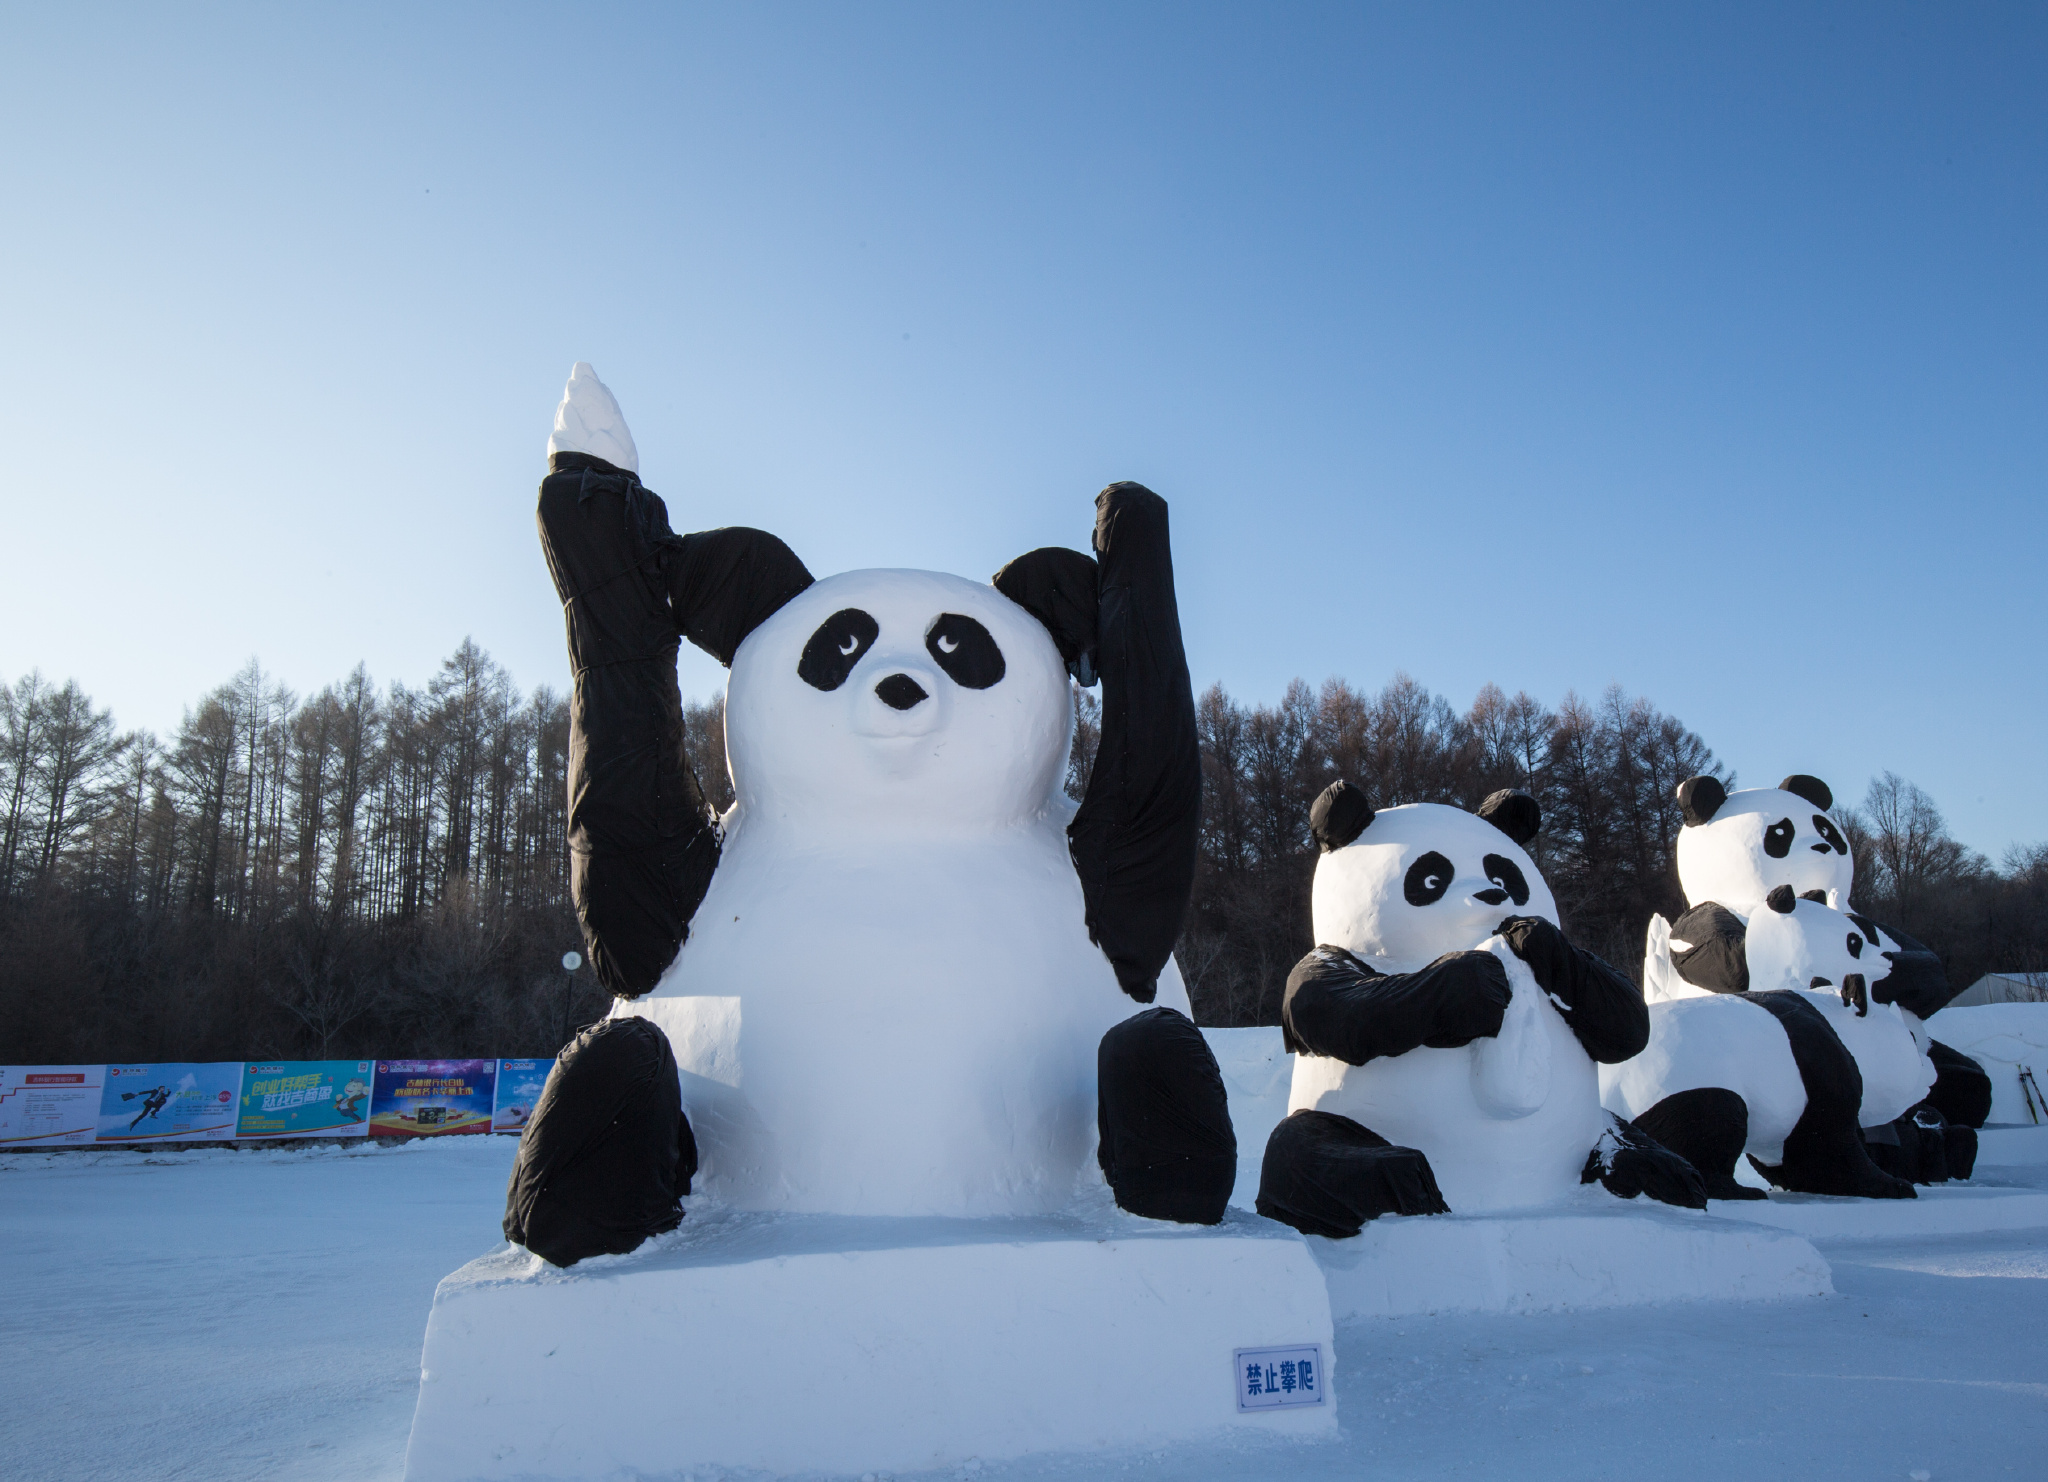 不用去哈尔滨,改去长春吧,这个5a景区200多座雪雕可以观赏拍照